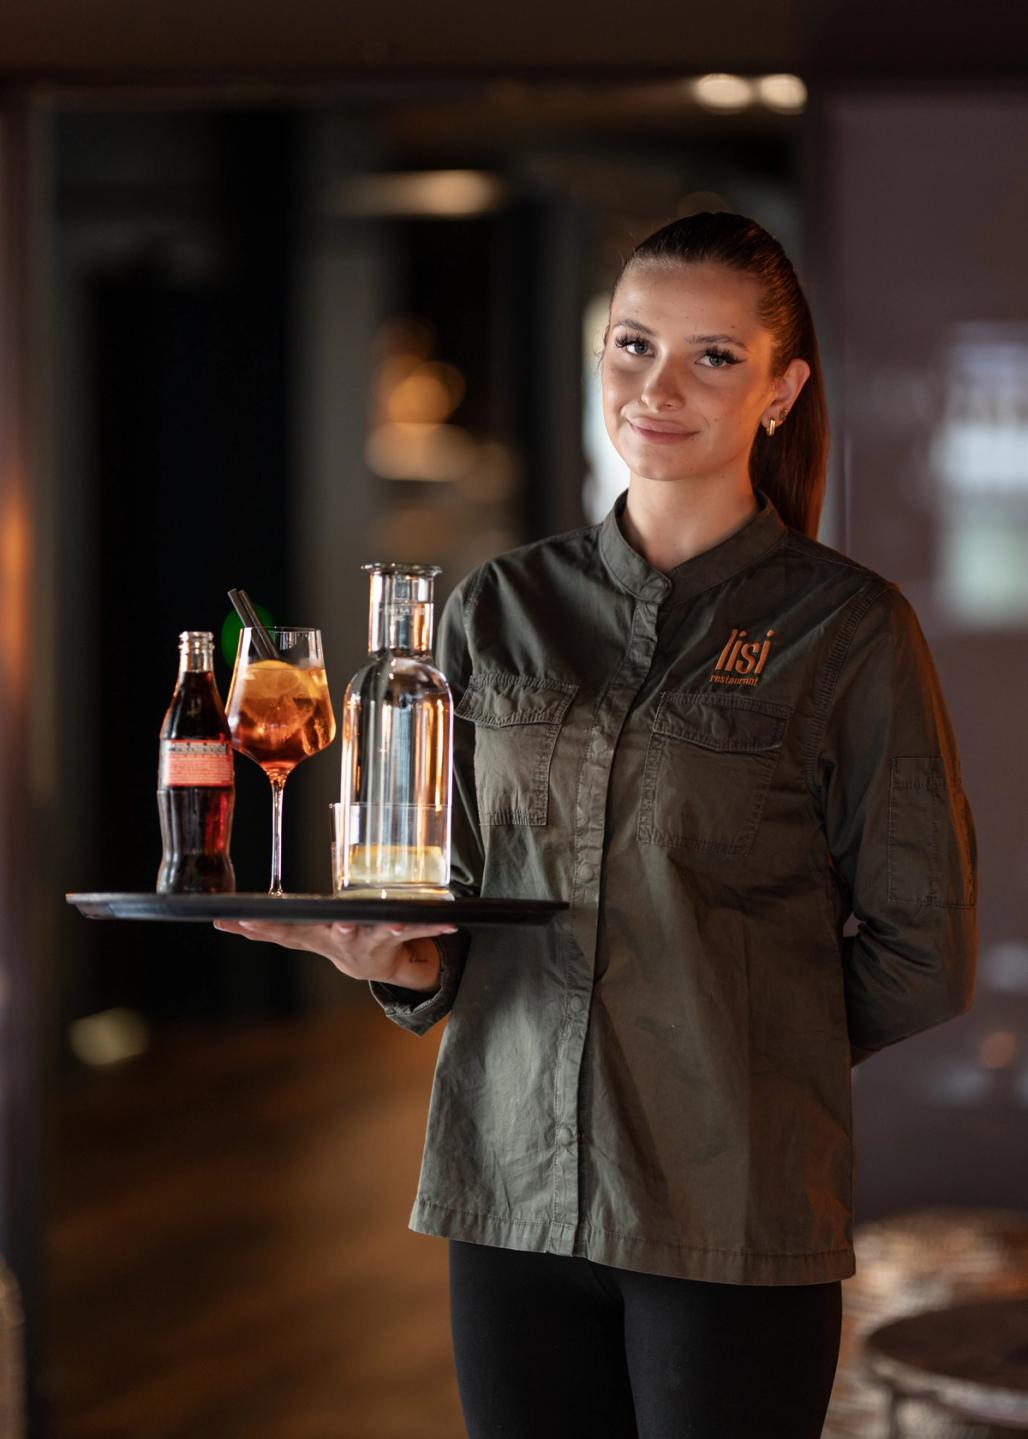 Eine Kellnerin bringt den Apéro auf dem Serviertablett: Aperol Spritz, Coca Cola und Wasser